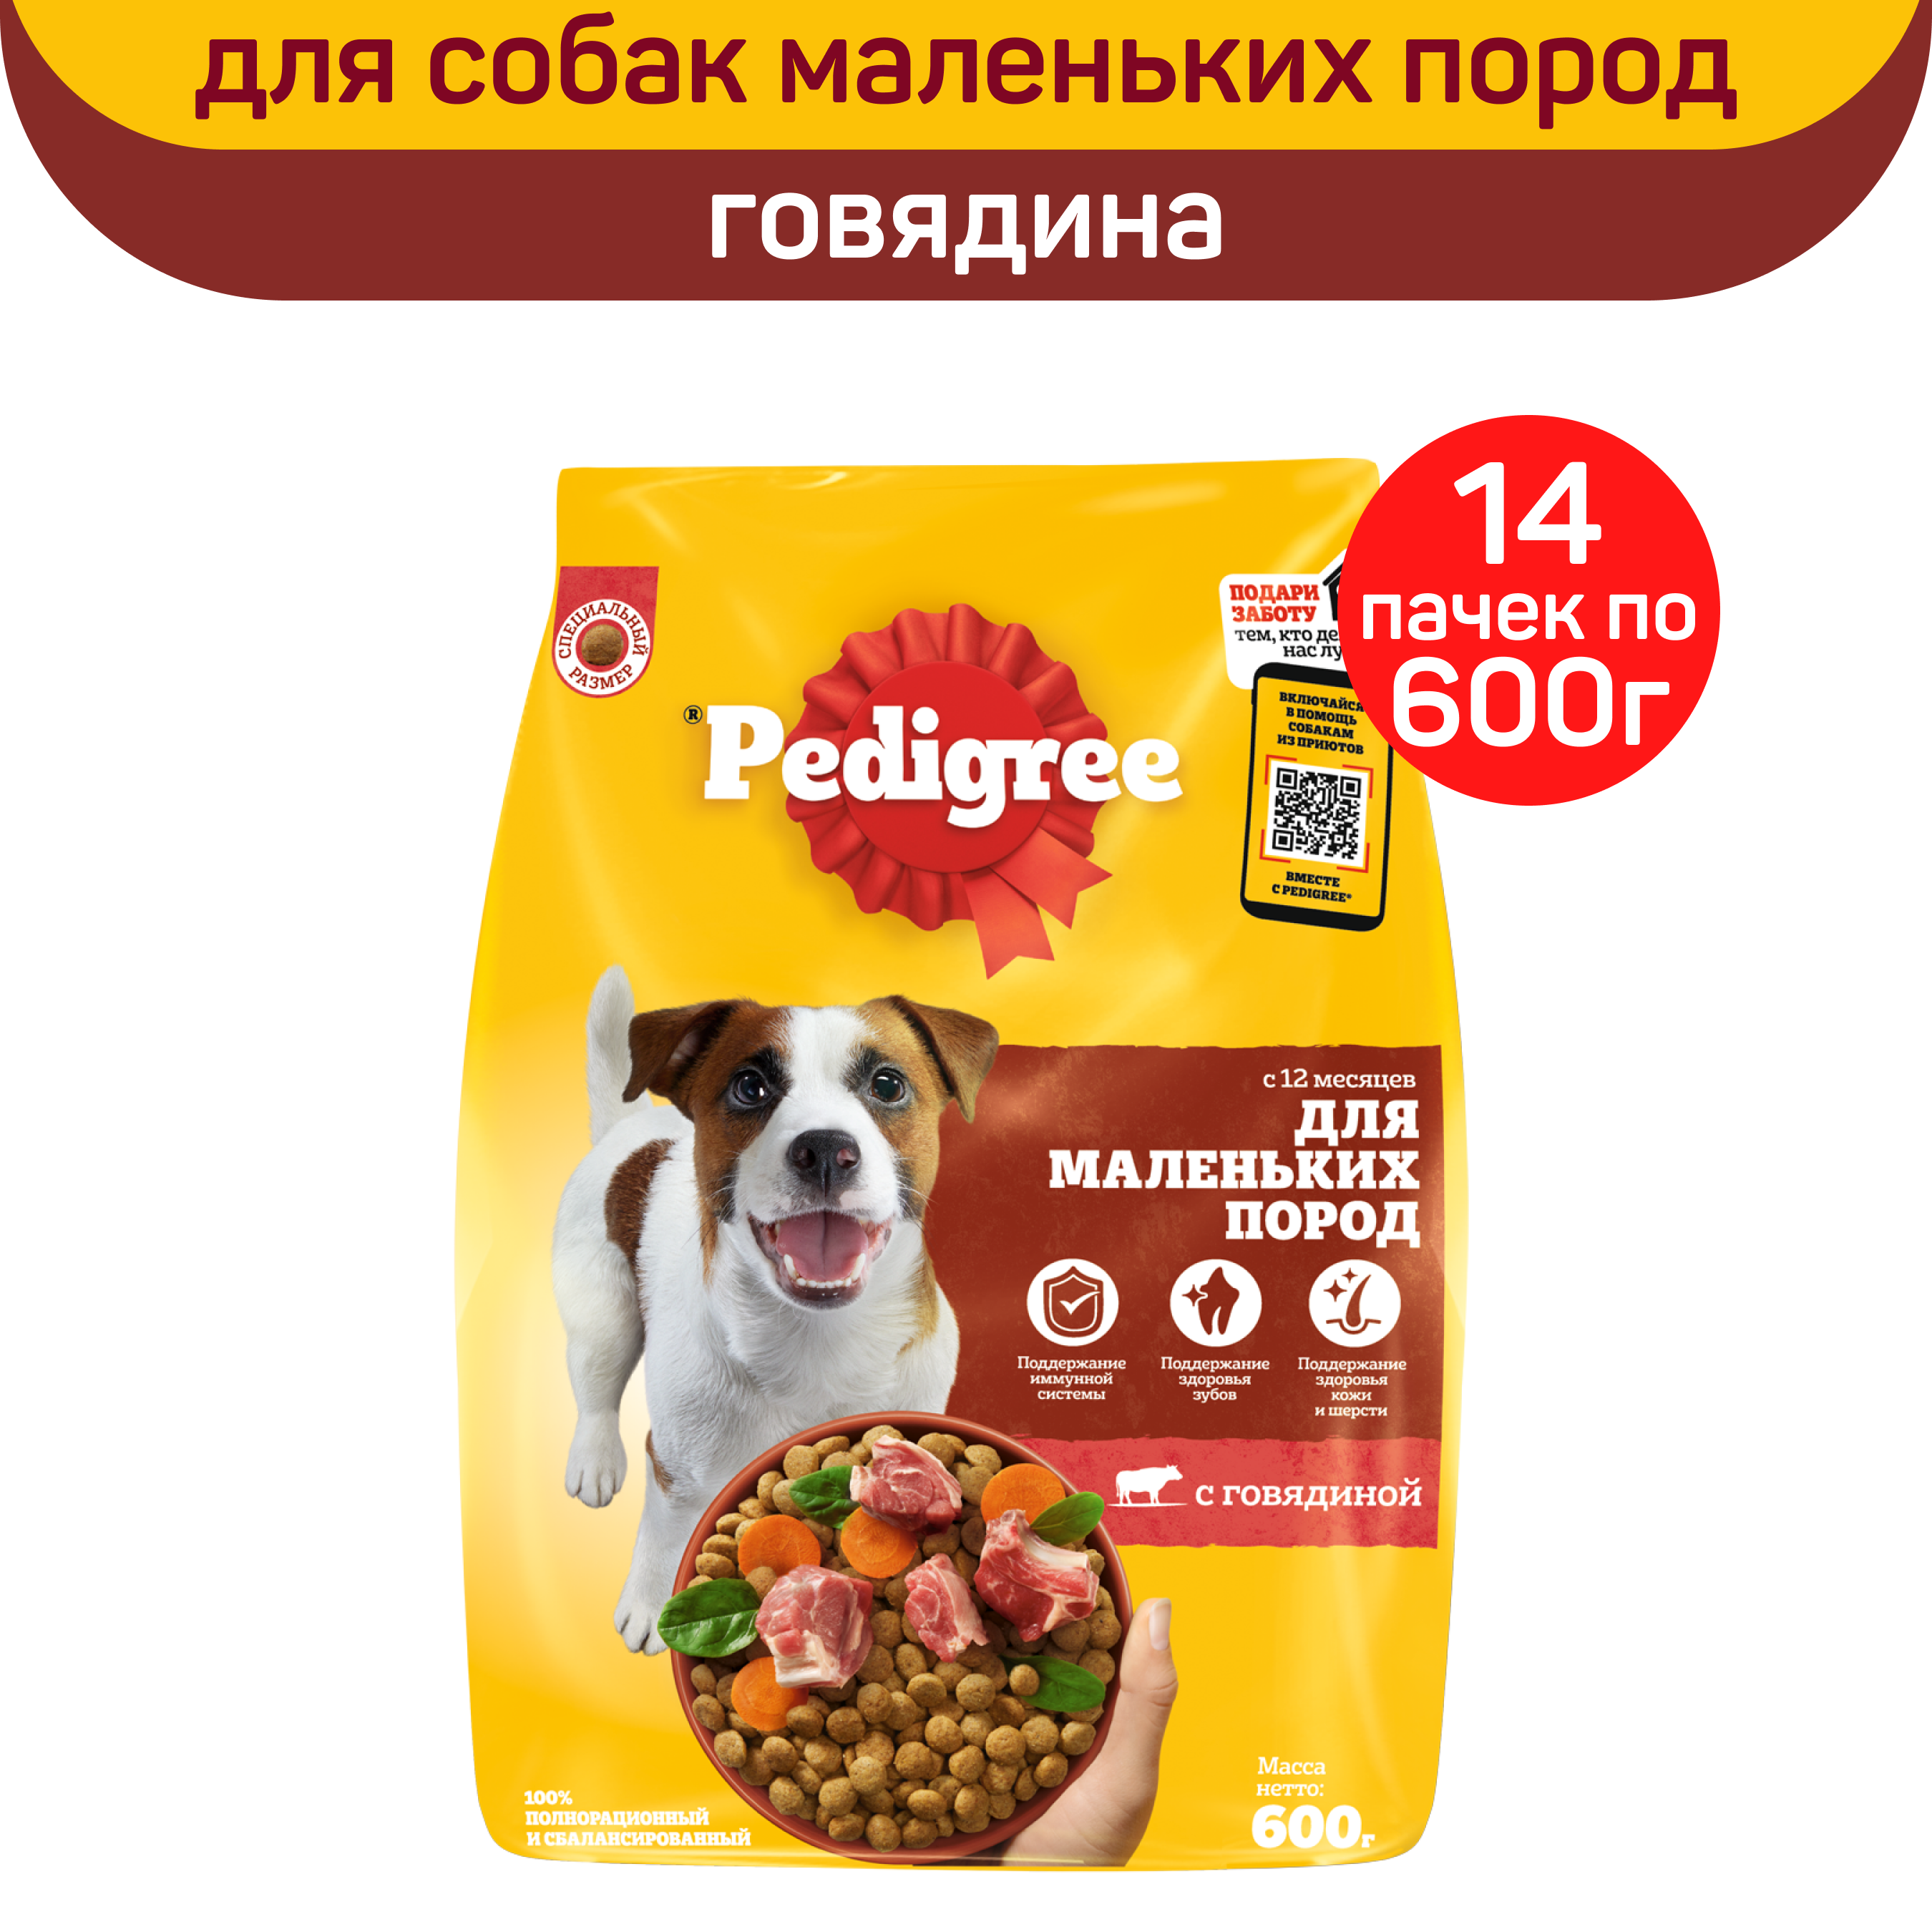 Сухой корм для собак PEDIGREE, для взрослых, для малых пород, с говядиной, 14 шт по 600 г